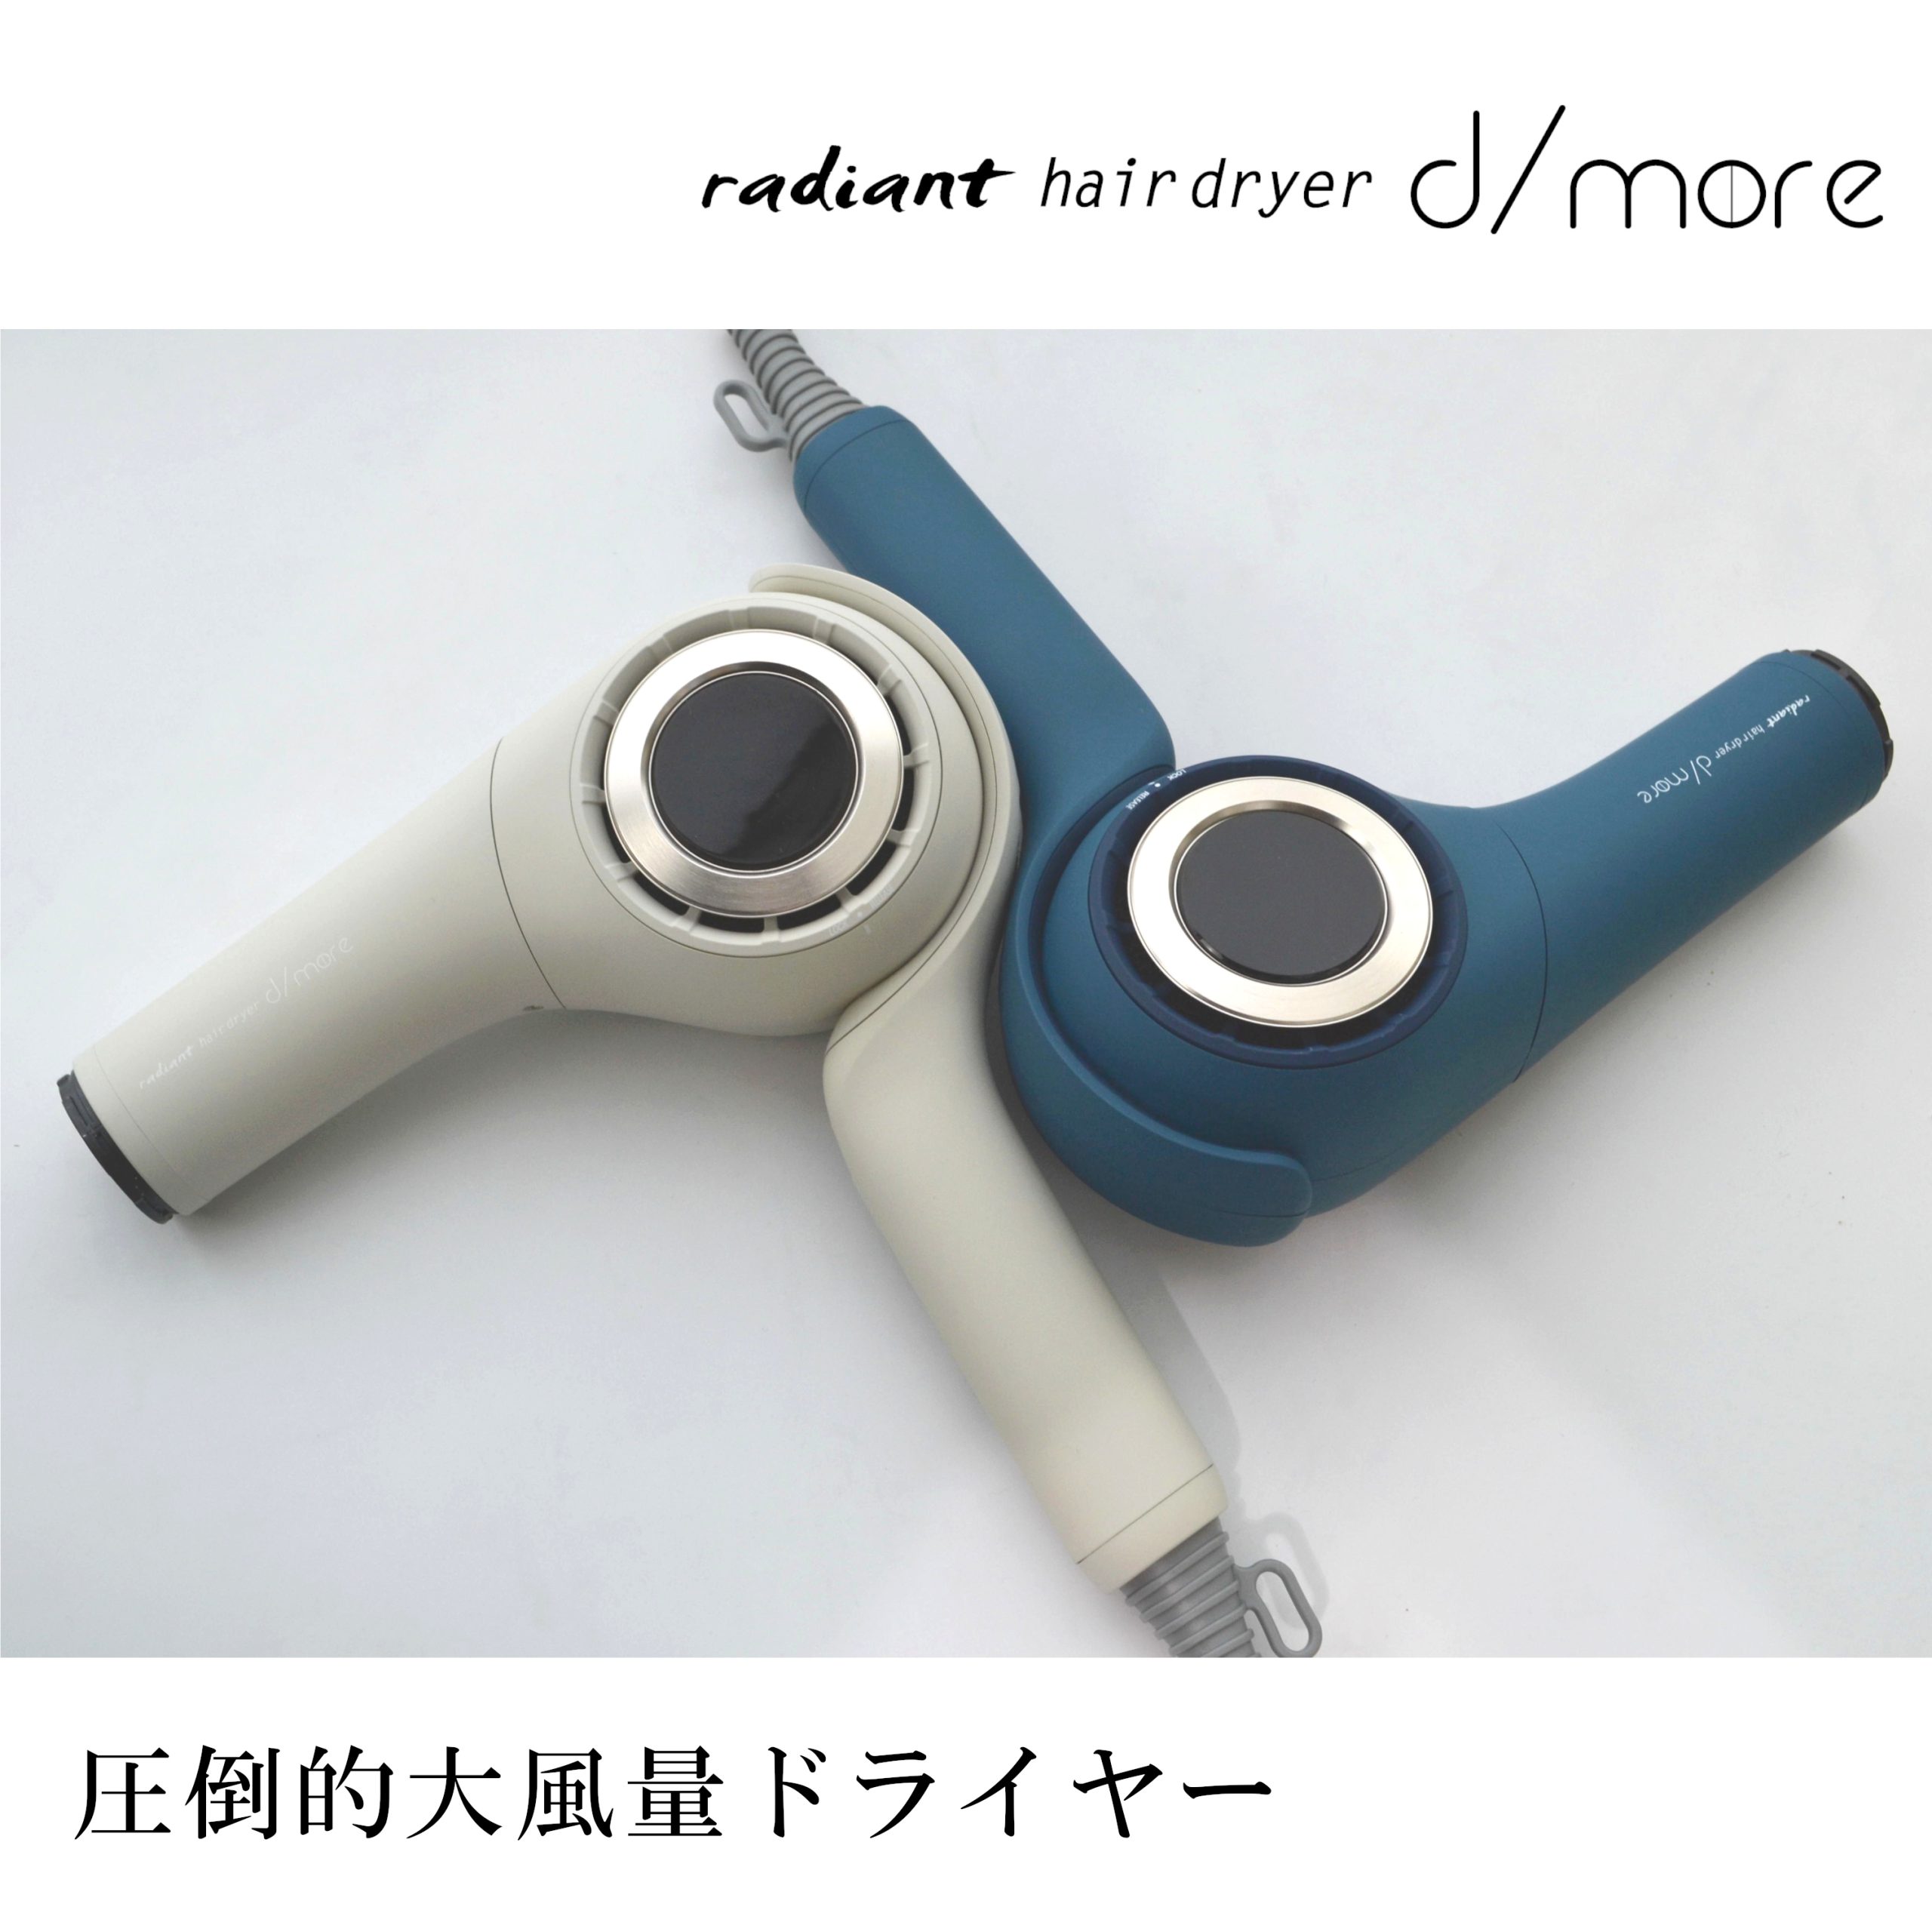 超強風ヘアドライヤー radiant hair dryer d/more 誕生 | 株式会社 B next